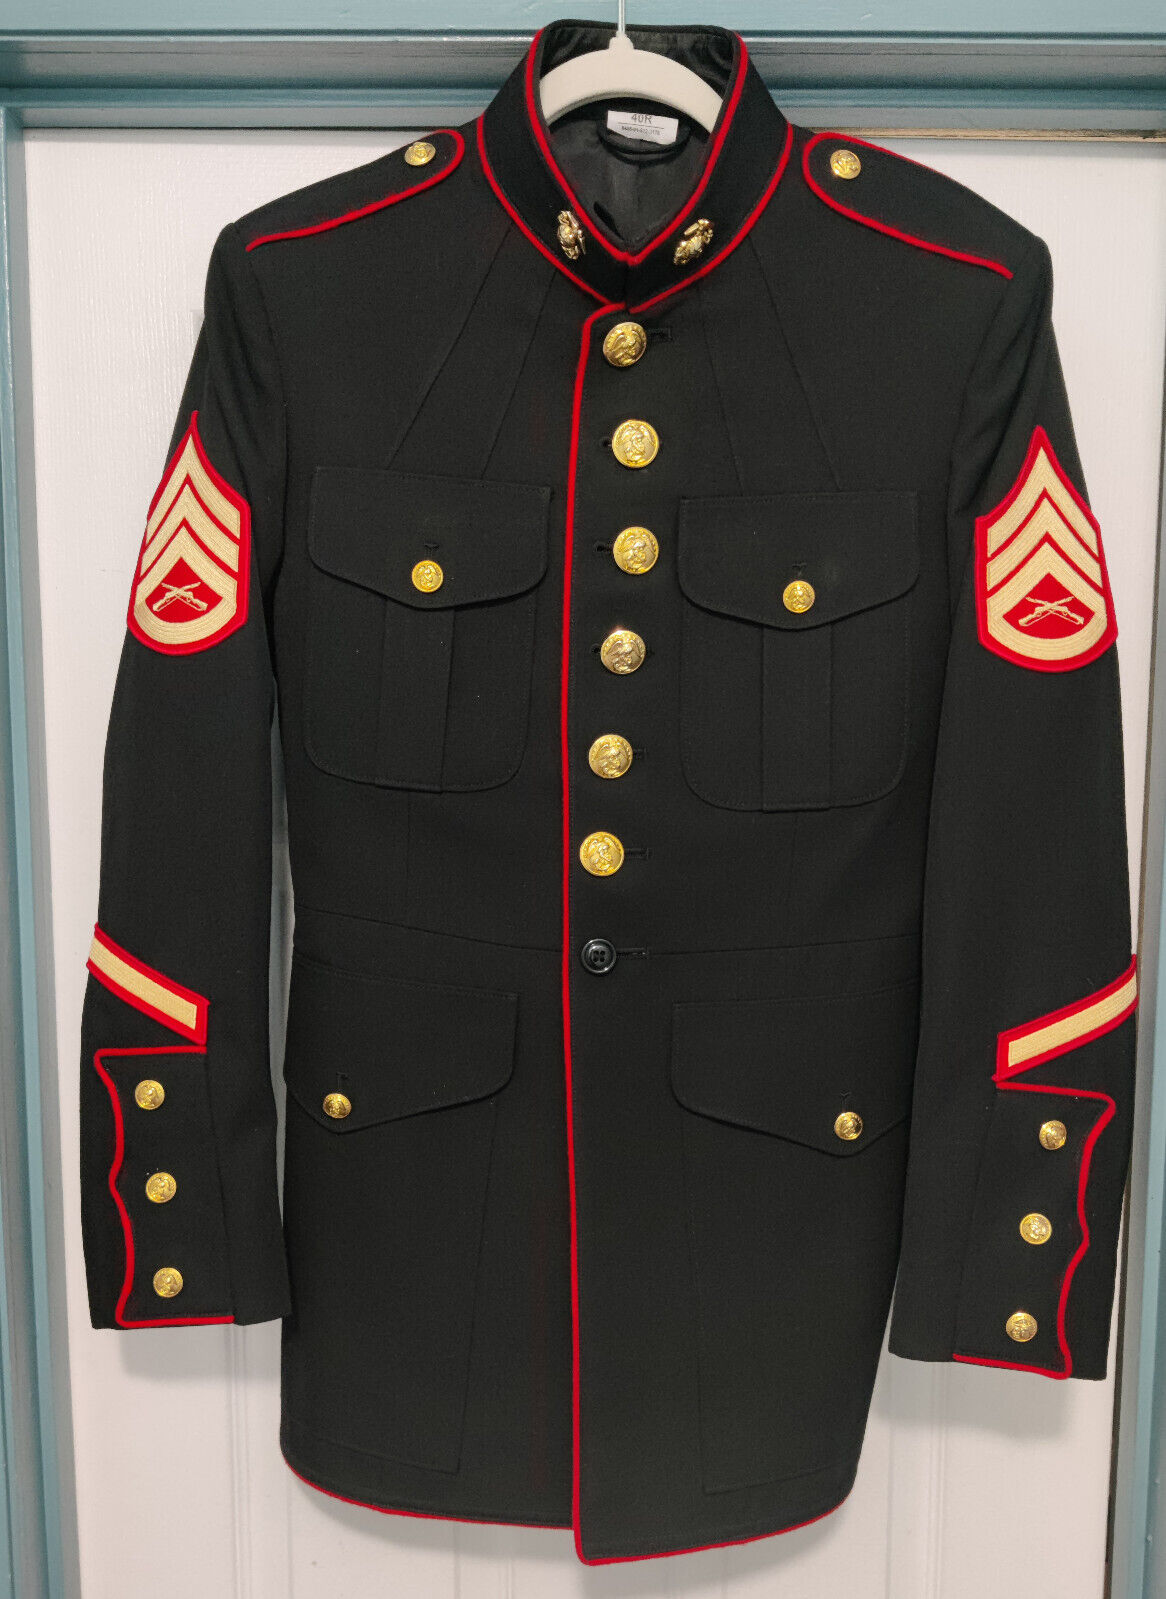 USMC Marine Corps Dress Blues Jacket 40R - Excellent Condition